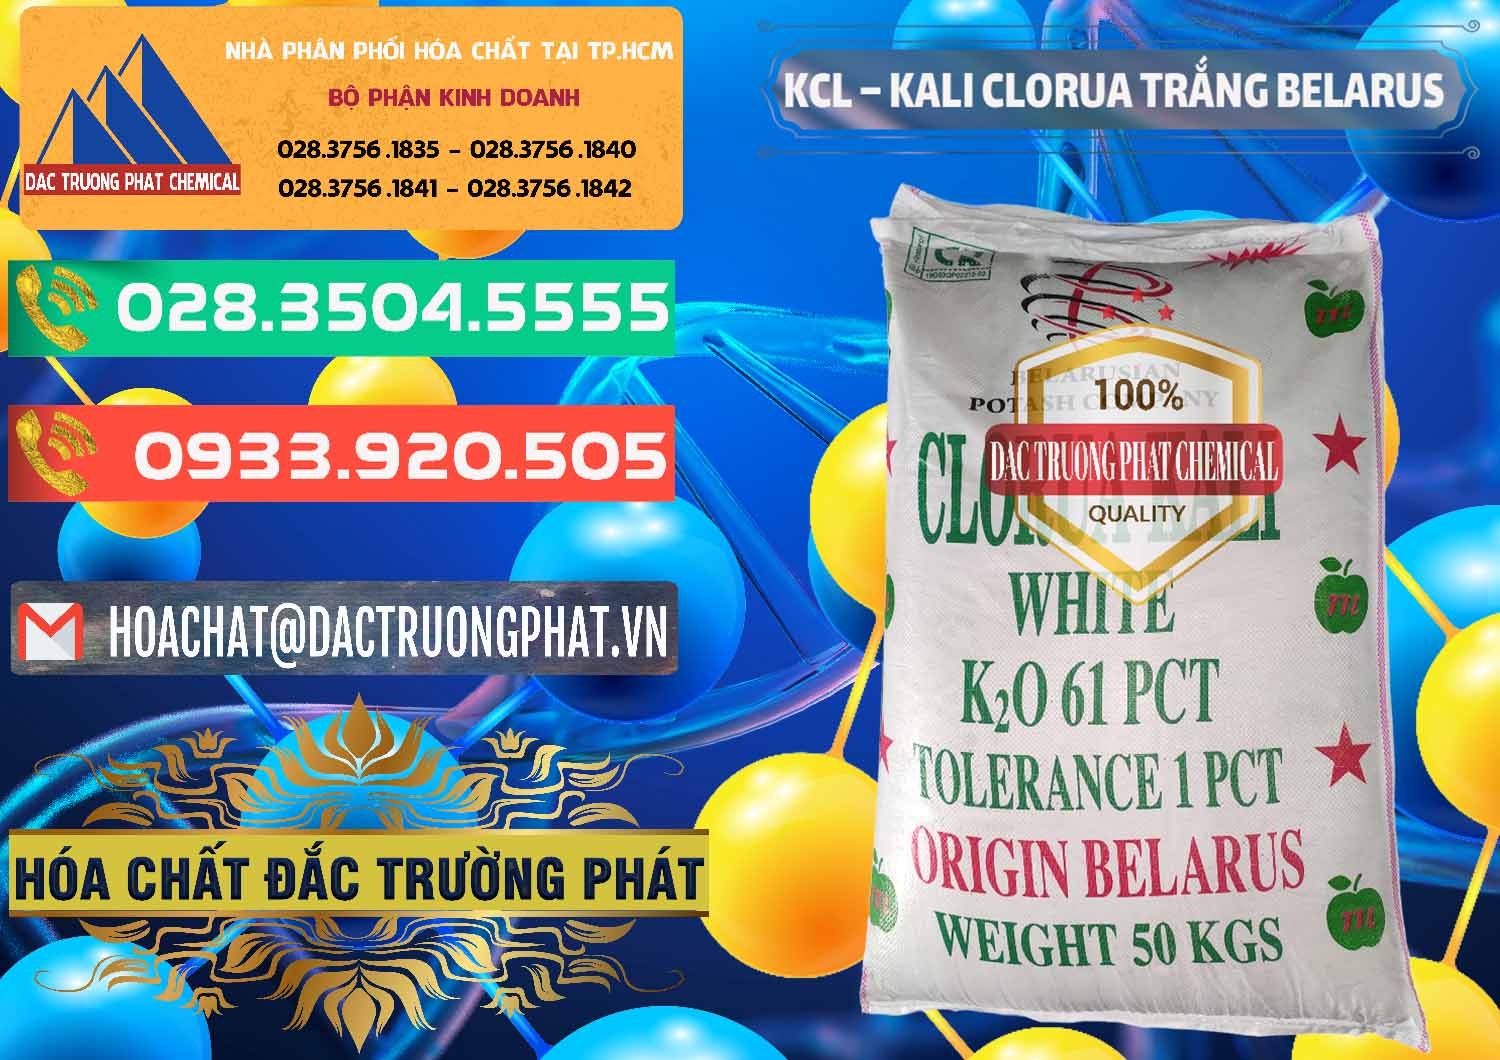 Chuyên nhập khẩu - bán KCL – Kali Clorua Trắng Belarus - 0085 - Nơi chuyên cung cấp ( nhập khẩu ) hóa chất tại TP.HCM - congtyhoachat.com.vn